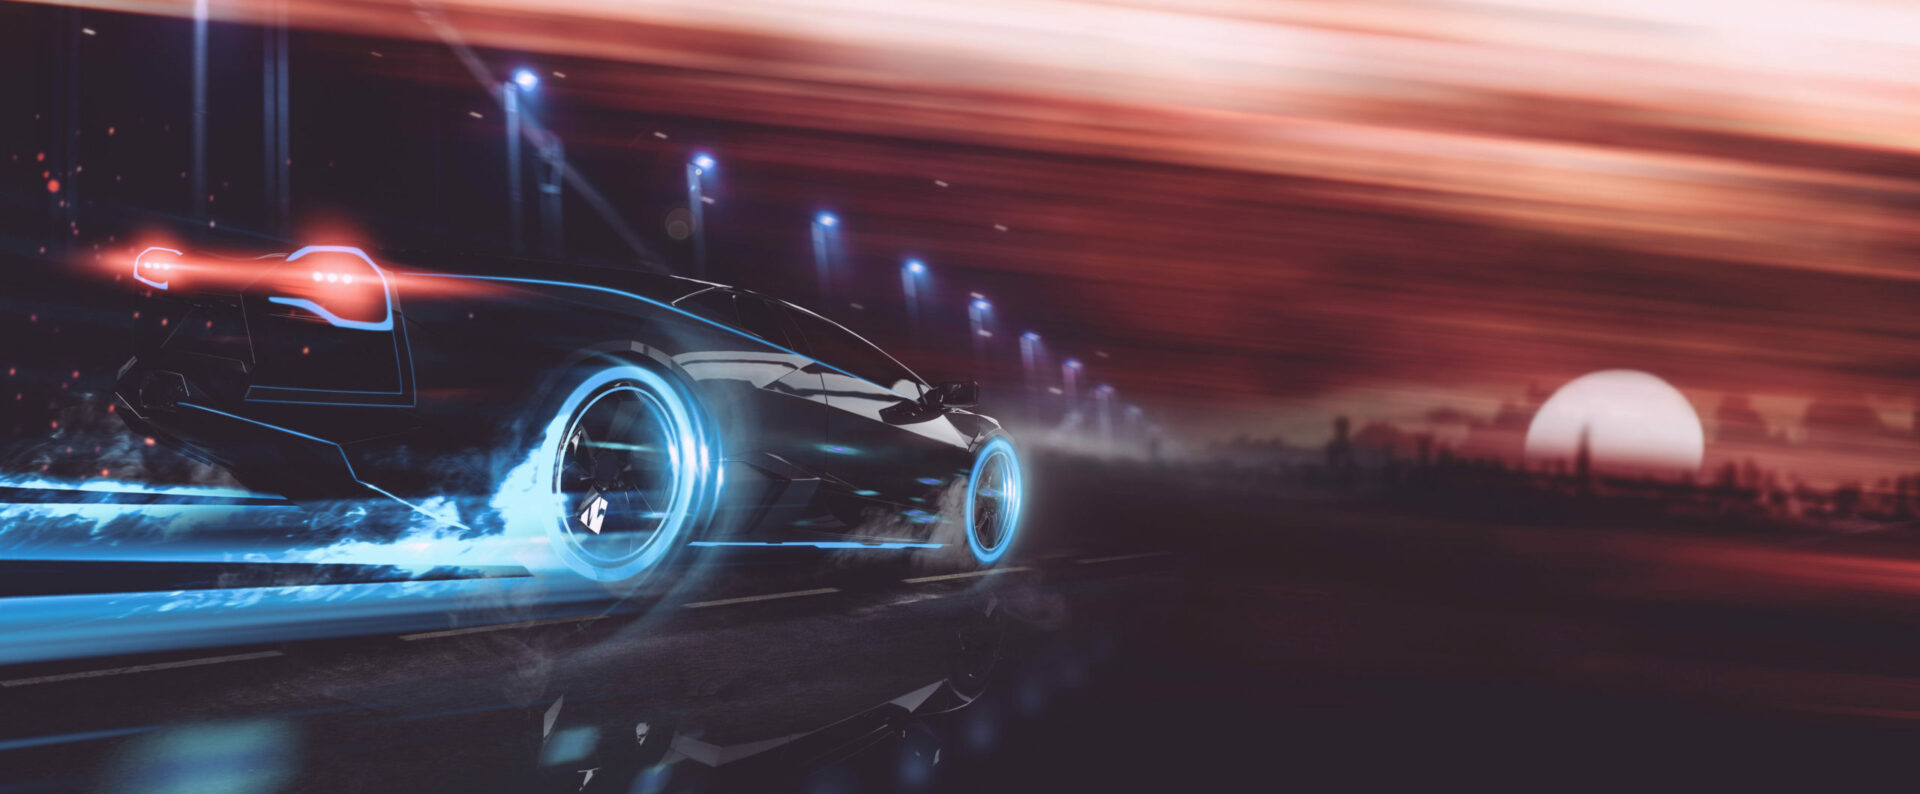 futuristic fast car